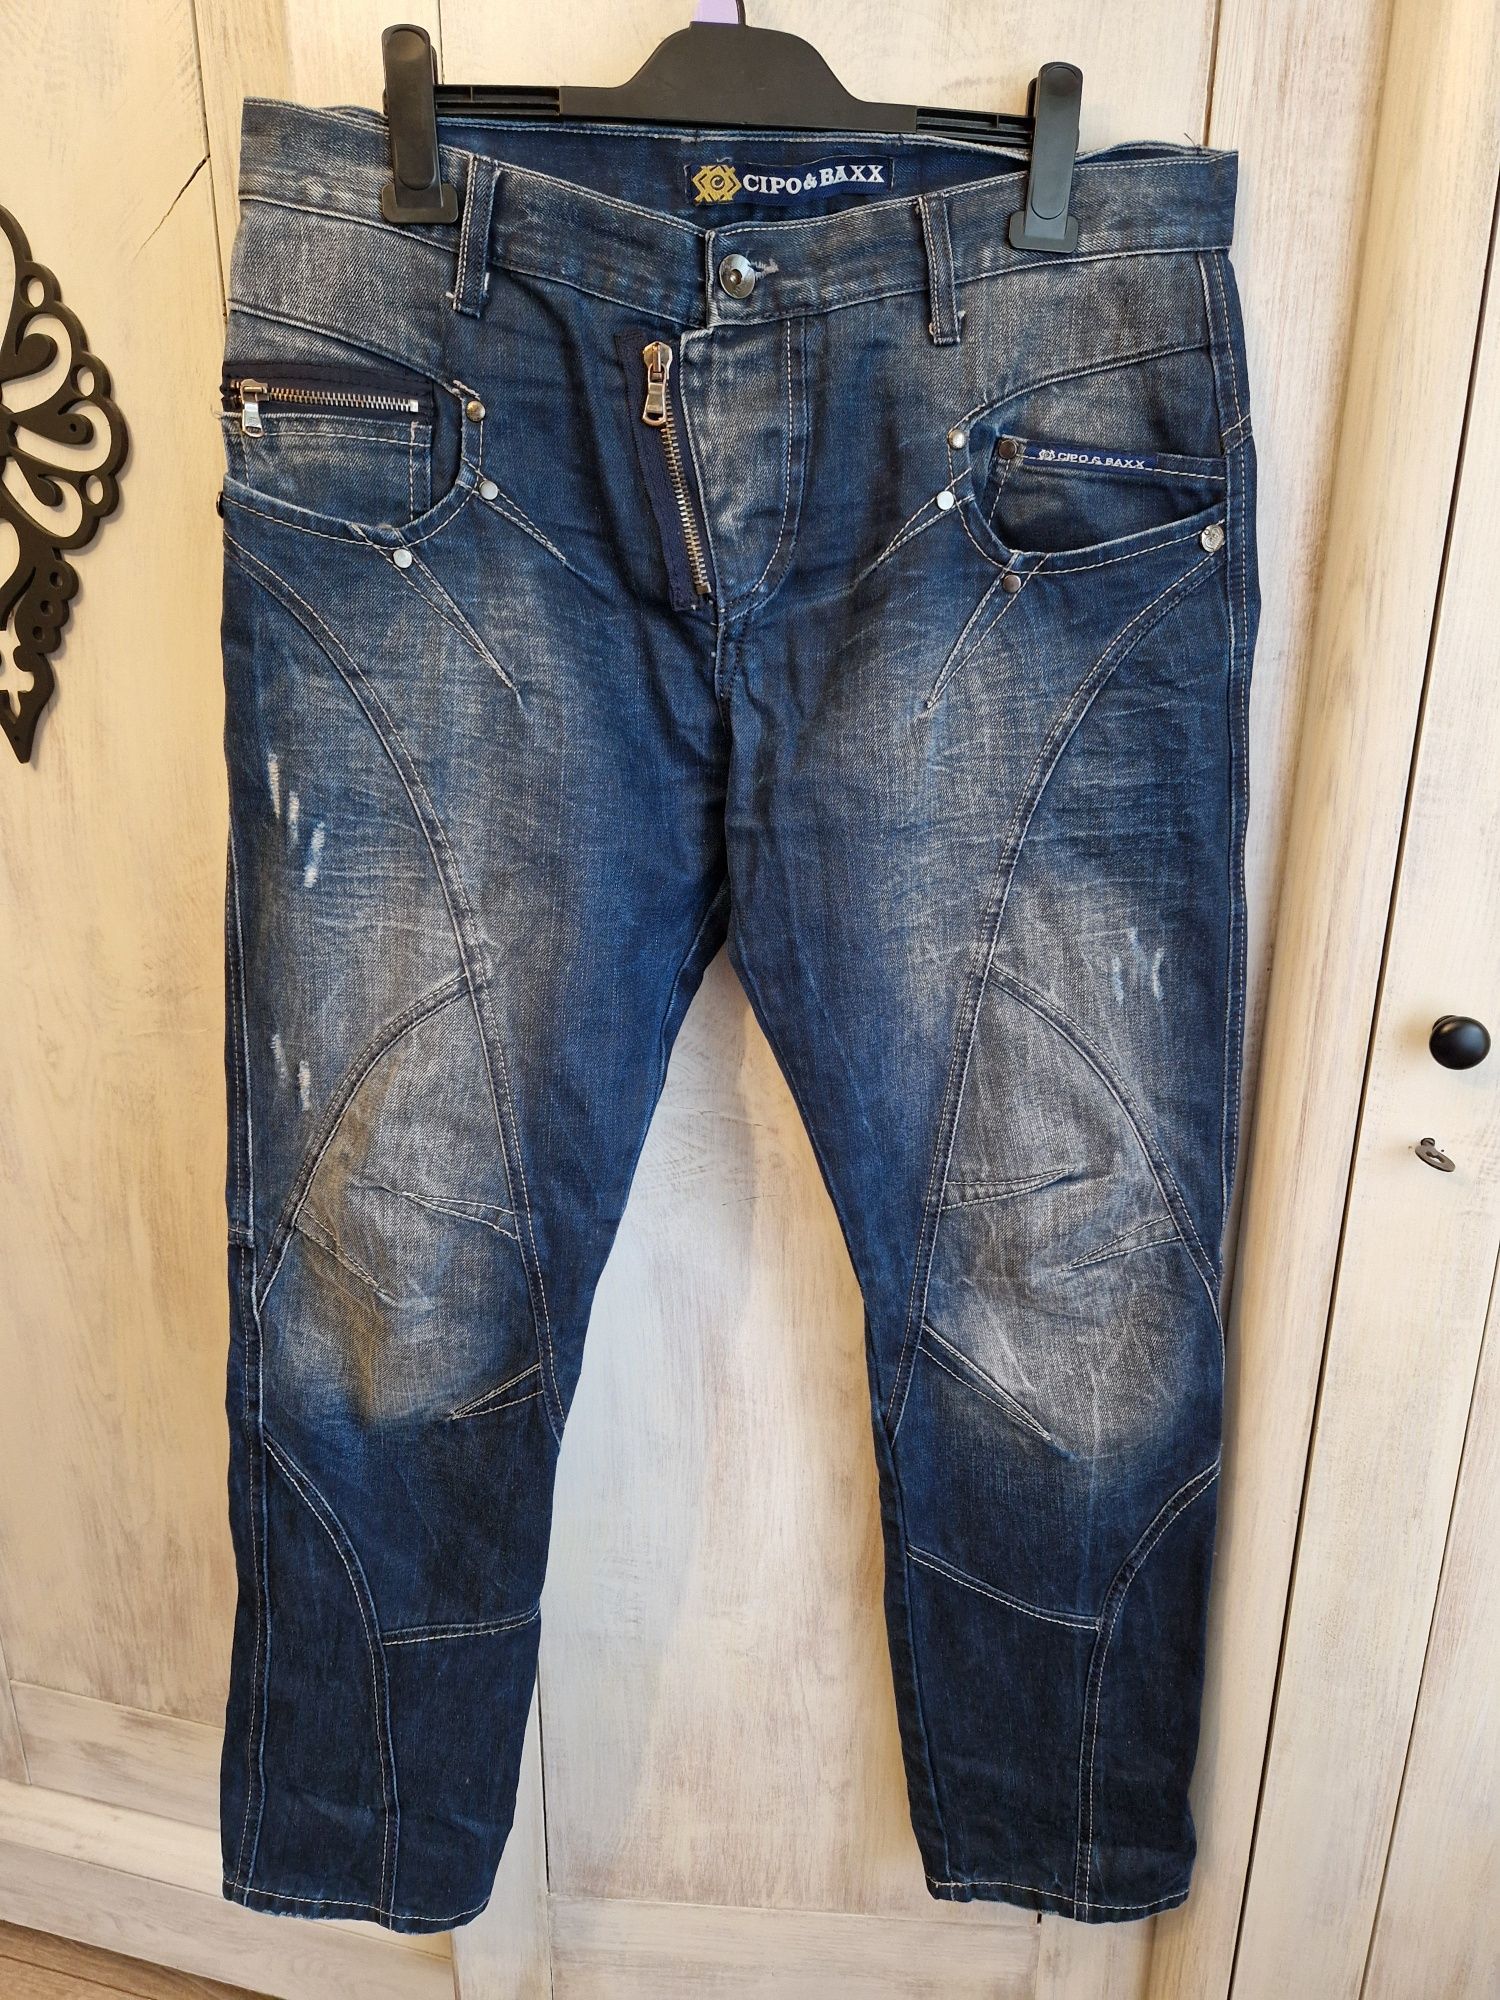 Spodnie jeans Cipo&Baxx r. L